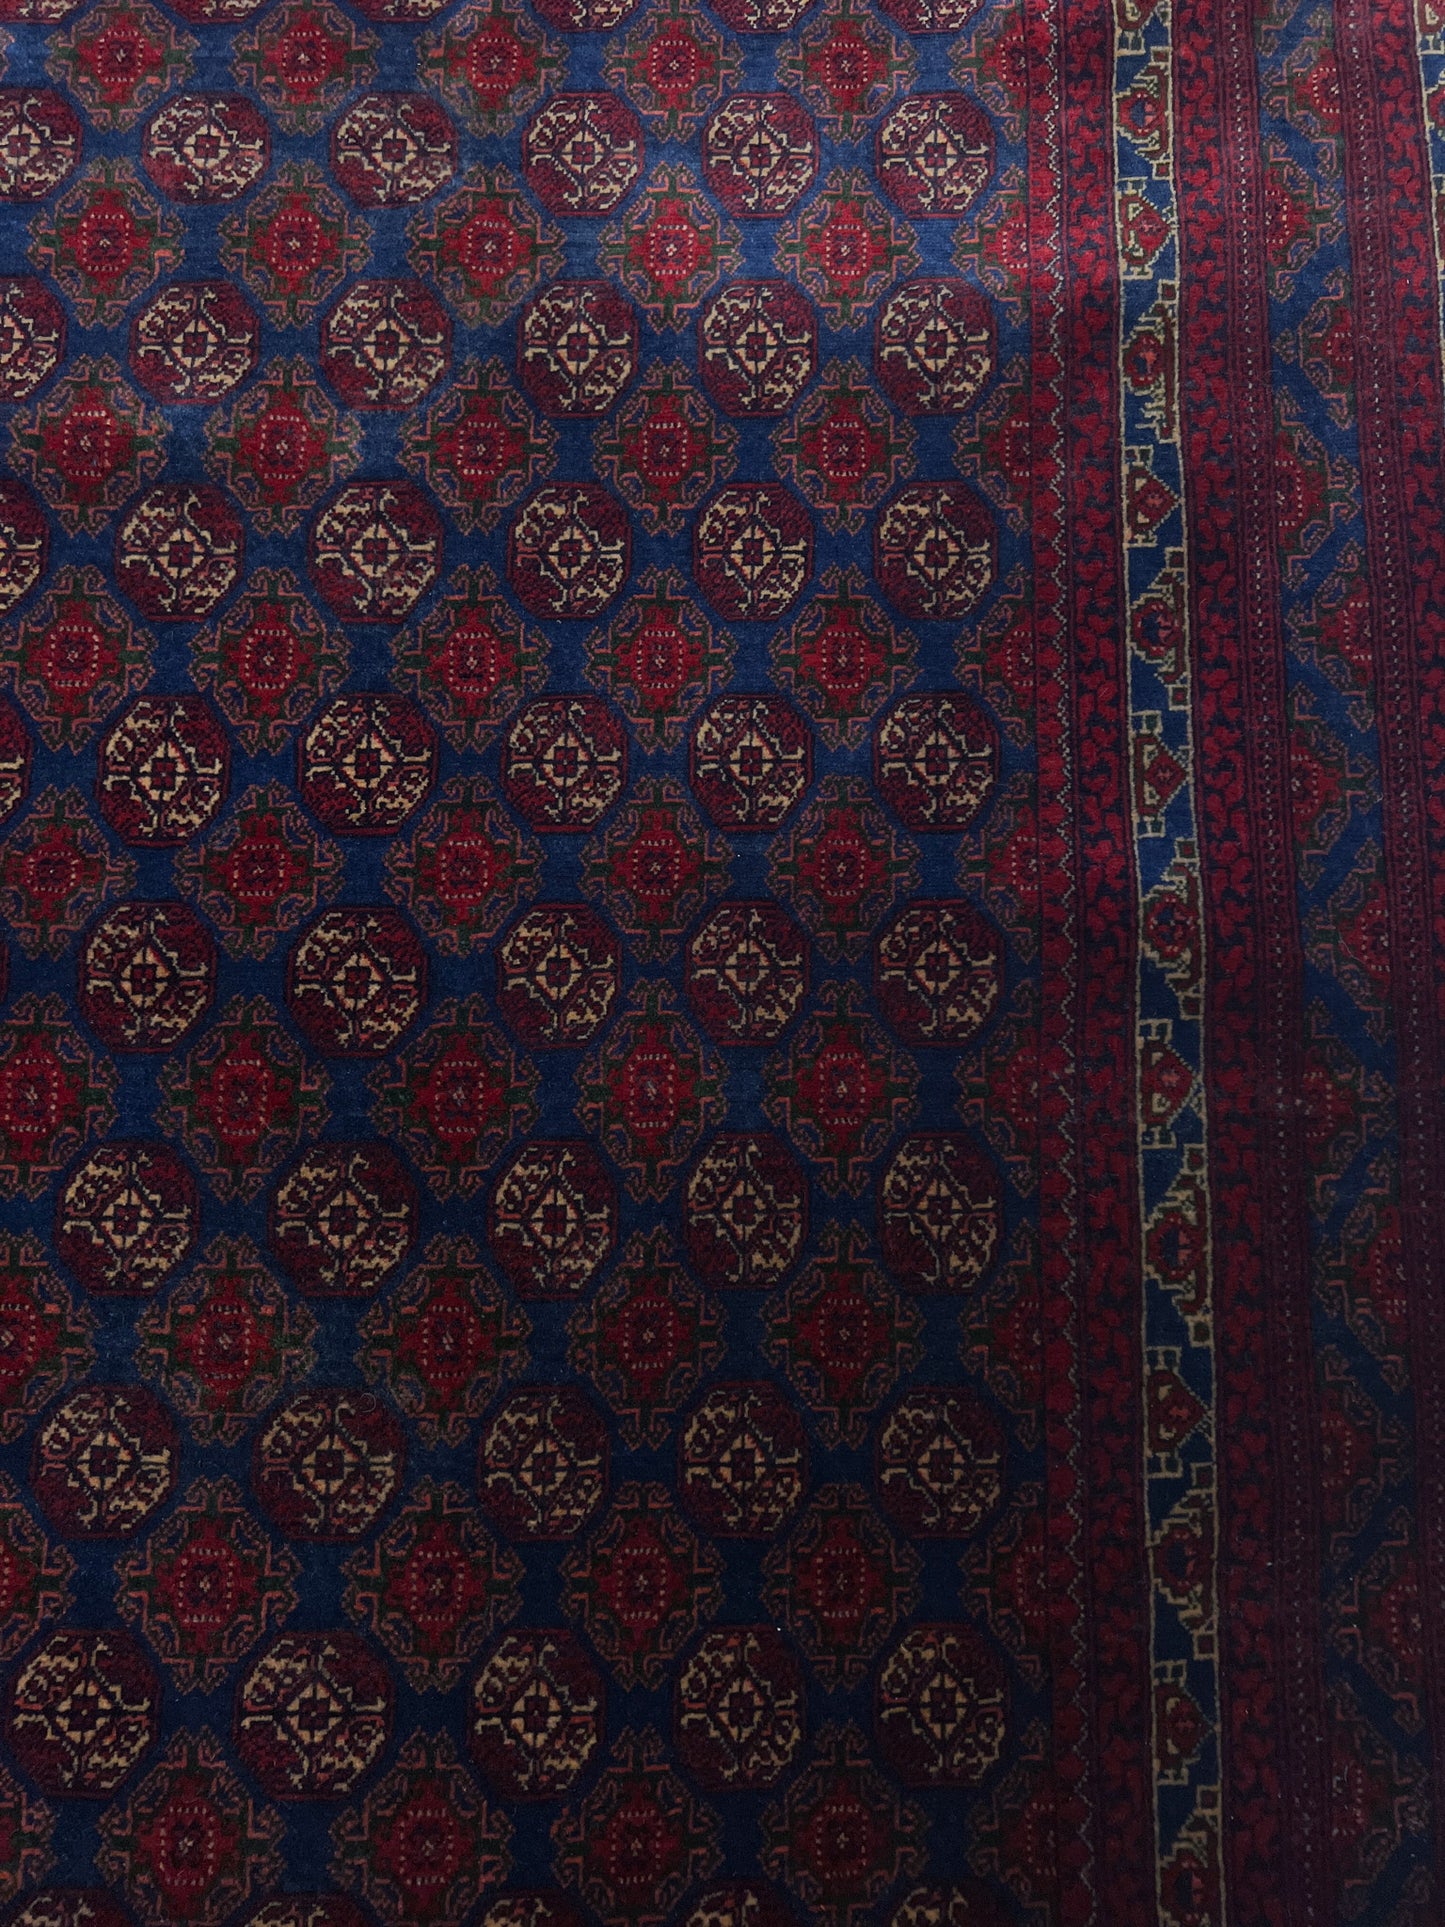 Soft Turkmen rug for living room, bedroom, dining. Oriental rug store san mateo, palo alto, berkeley. Buy oriental rug shop onlline. 